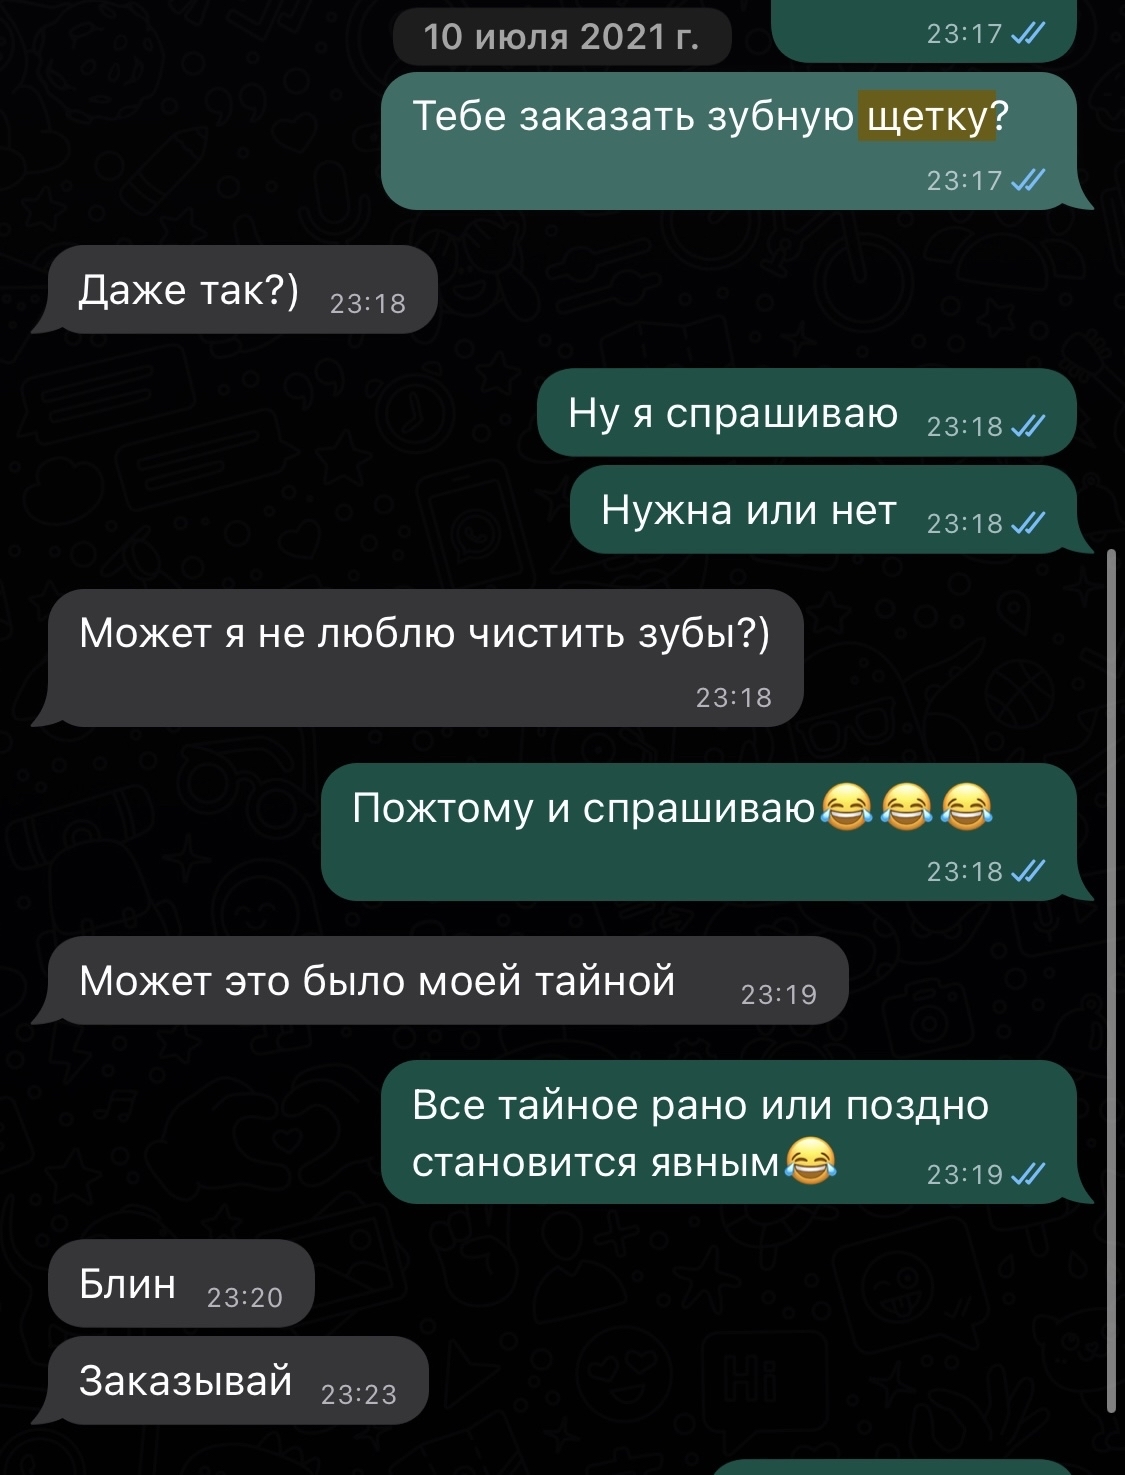 Реальные секс знакомства Москвы - би женщины для интима в районе Зюзино с проверенными номерами.